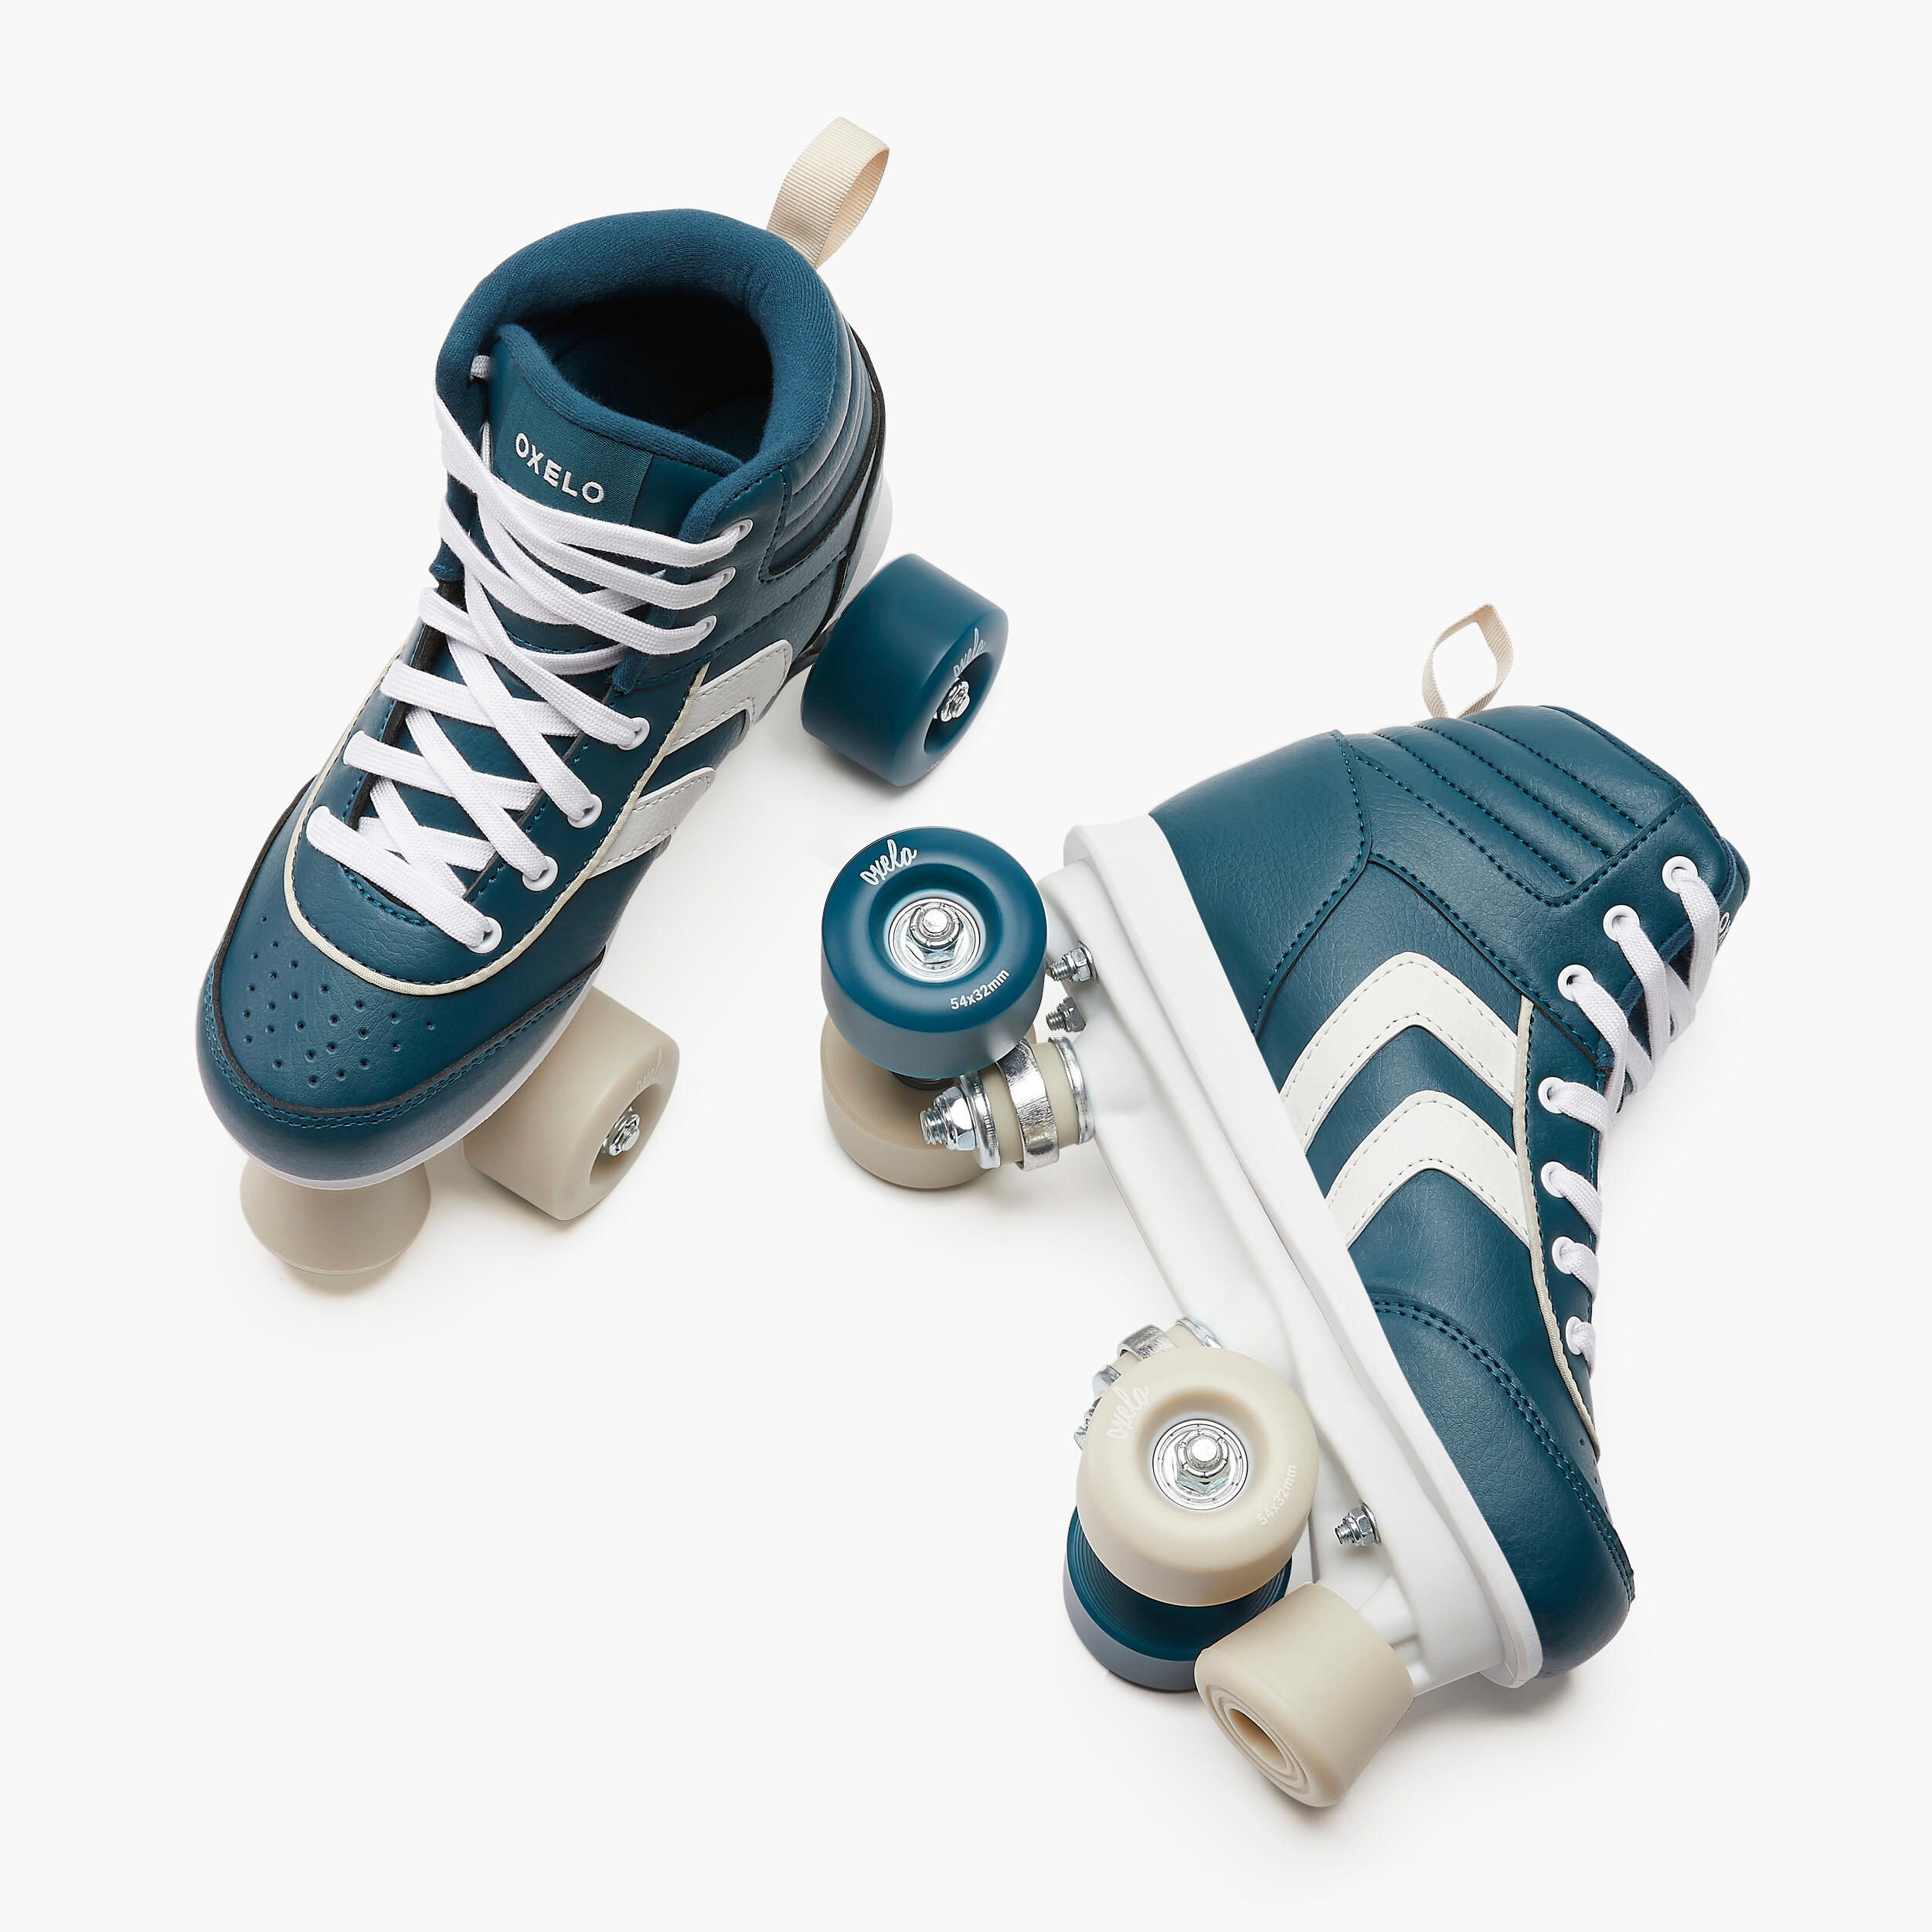 Kids' Roller Skates Quad 100 - Navy Blue 11/11